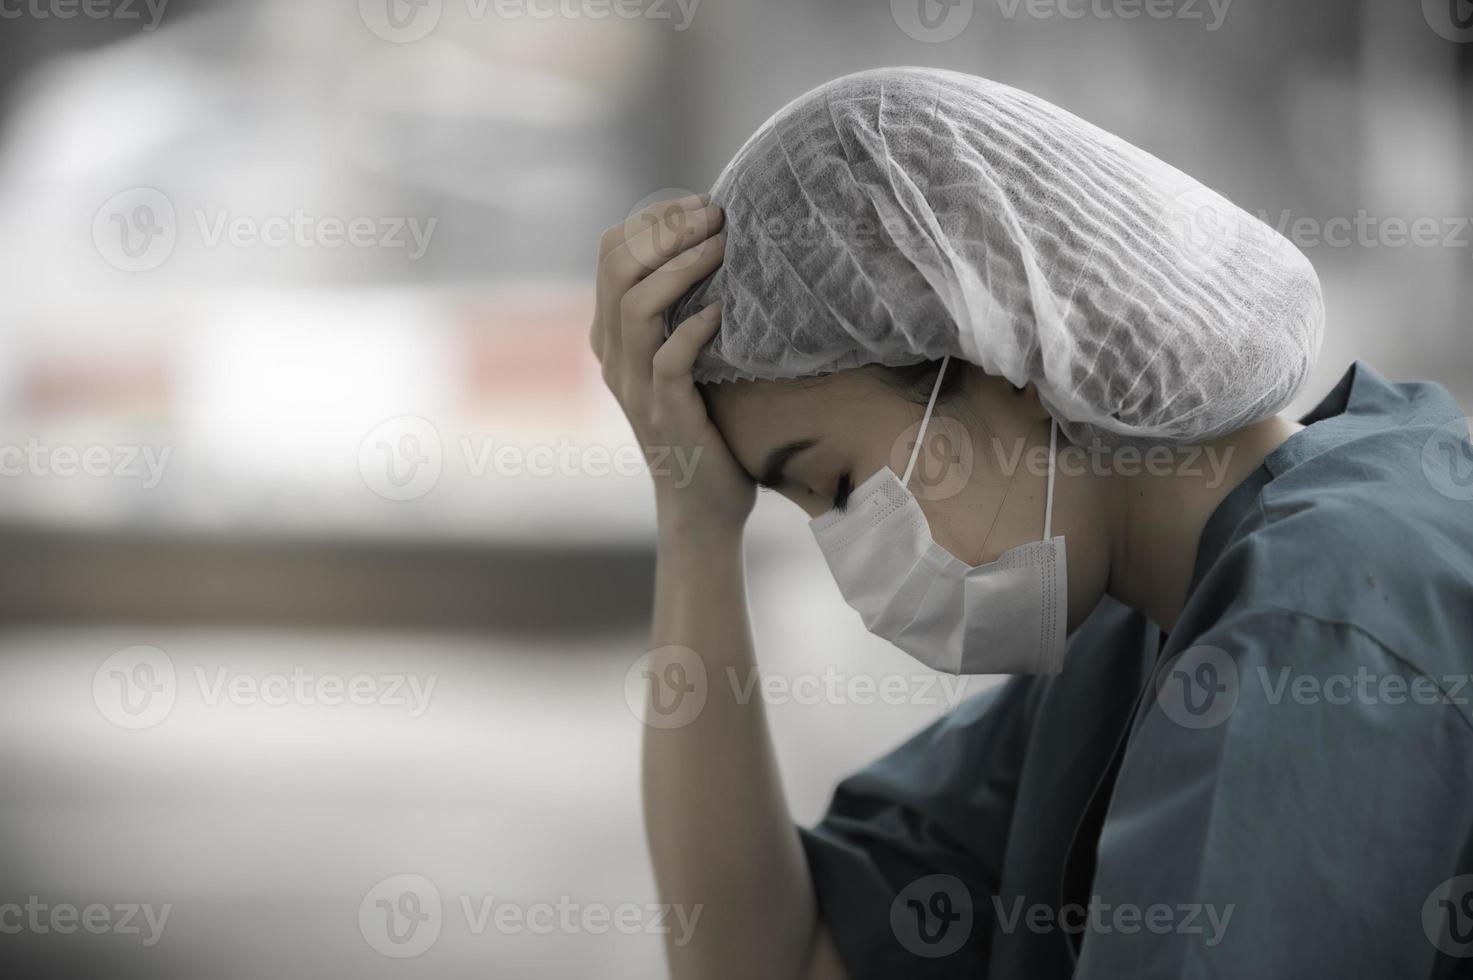 stanco depresso donna asiatica scrub infermiera indossa maschera facciale uniforme blu siede sul pavimento dell'ospedale, giovane donna medico stressato dal duro lavoro foto